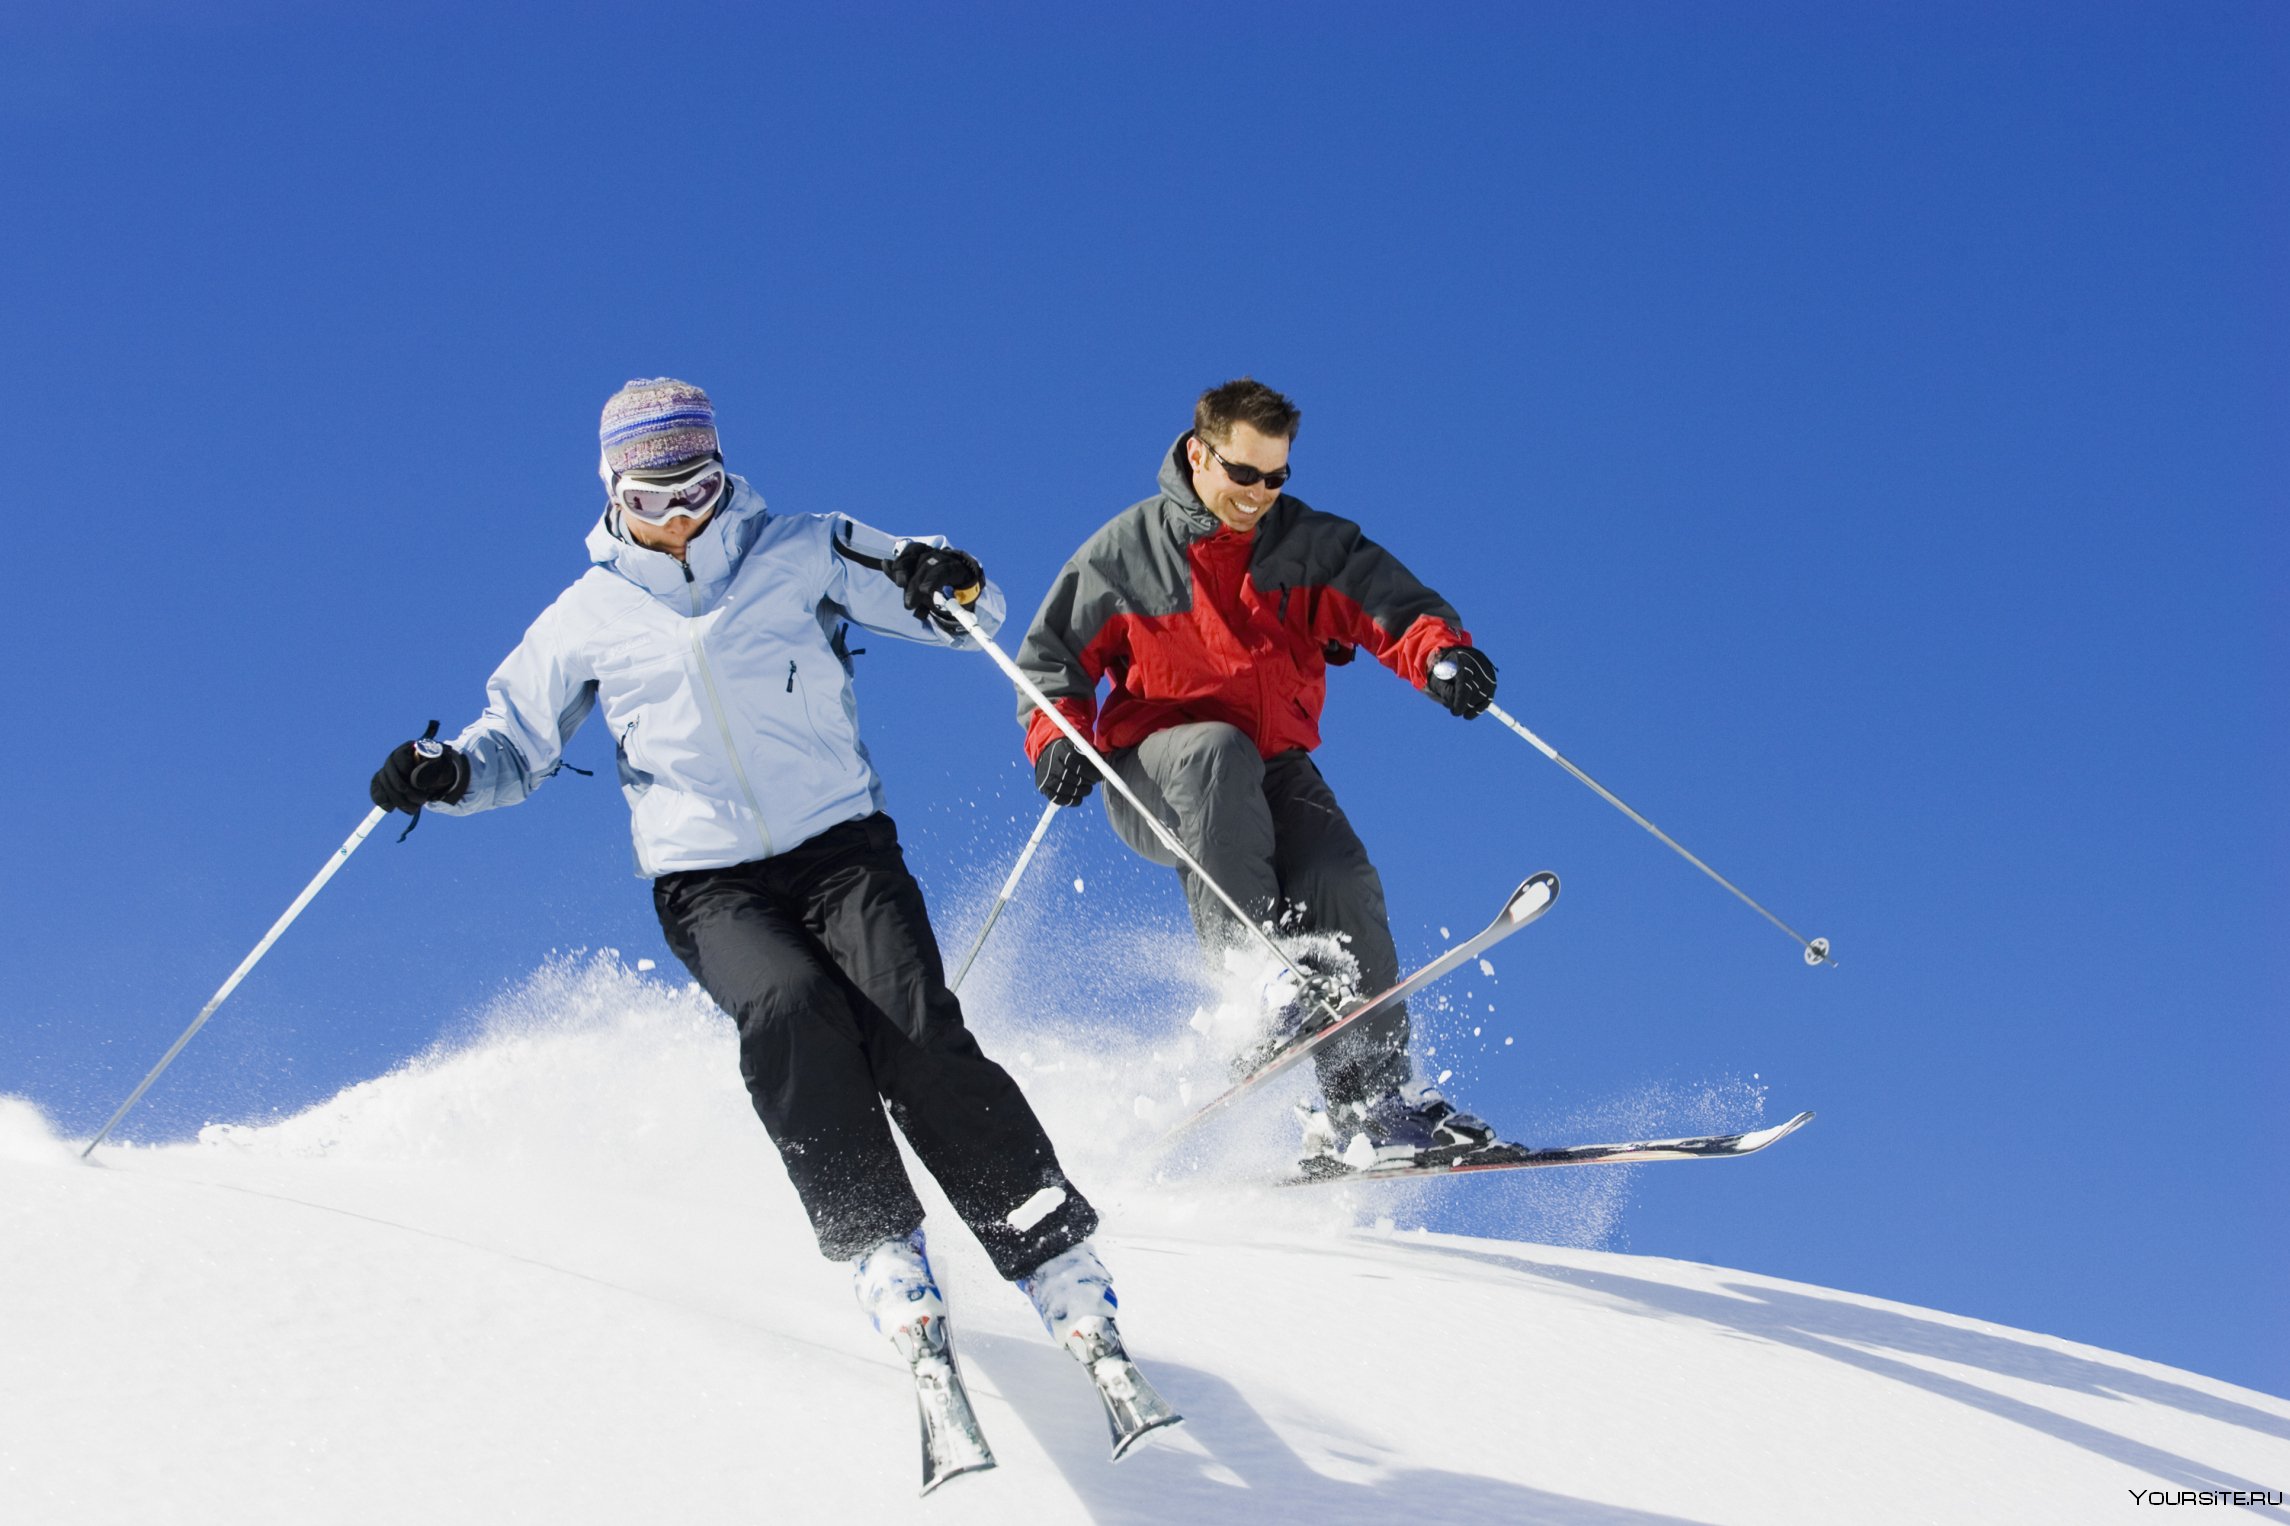 Зимний день и лыжи. Горнолыжный спорт. Катание на горных лыжах. Лыжи спорт. Виды лыжного спорта.